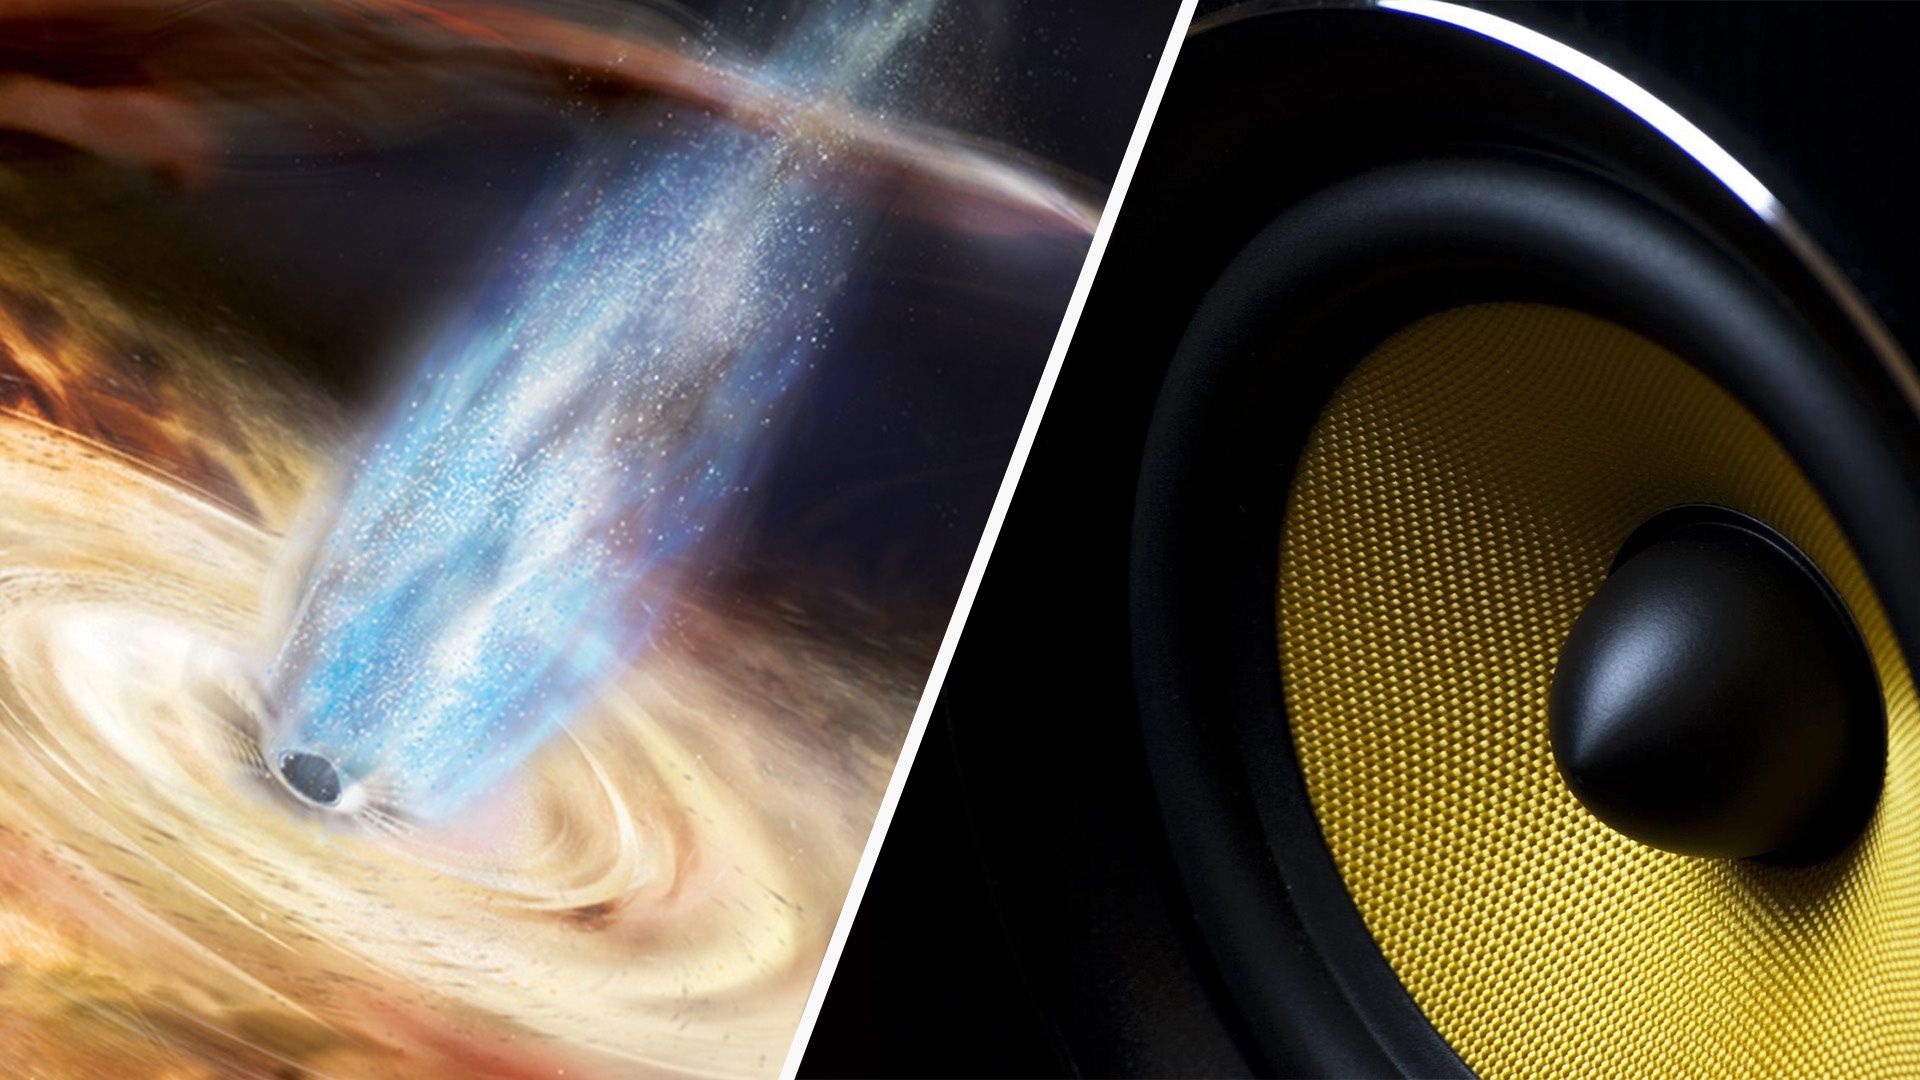 #Weltraumforschung – So klingt ein schwarzes Loch, das gerade Planeten verschlingt: Gruselig